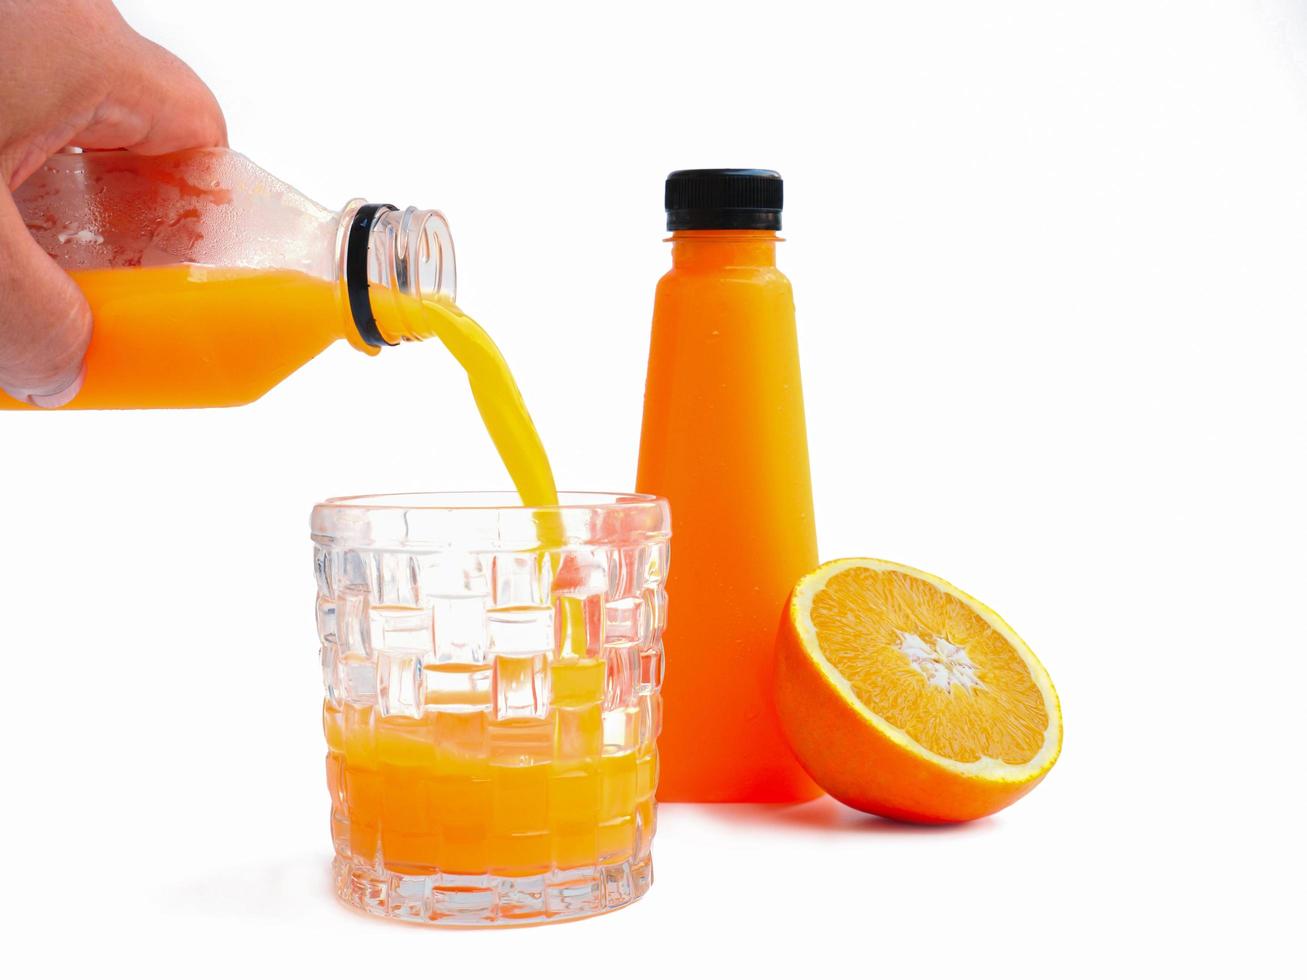 häll apelsinjuicen i en glasburk på vit bakgrund och ha apelsinjuiceflaskan redo. apelsin halverad som bakgrund foto